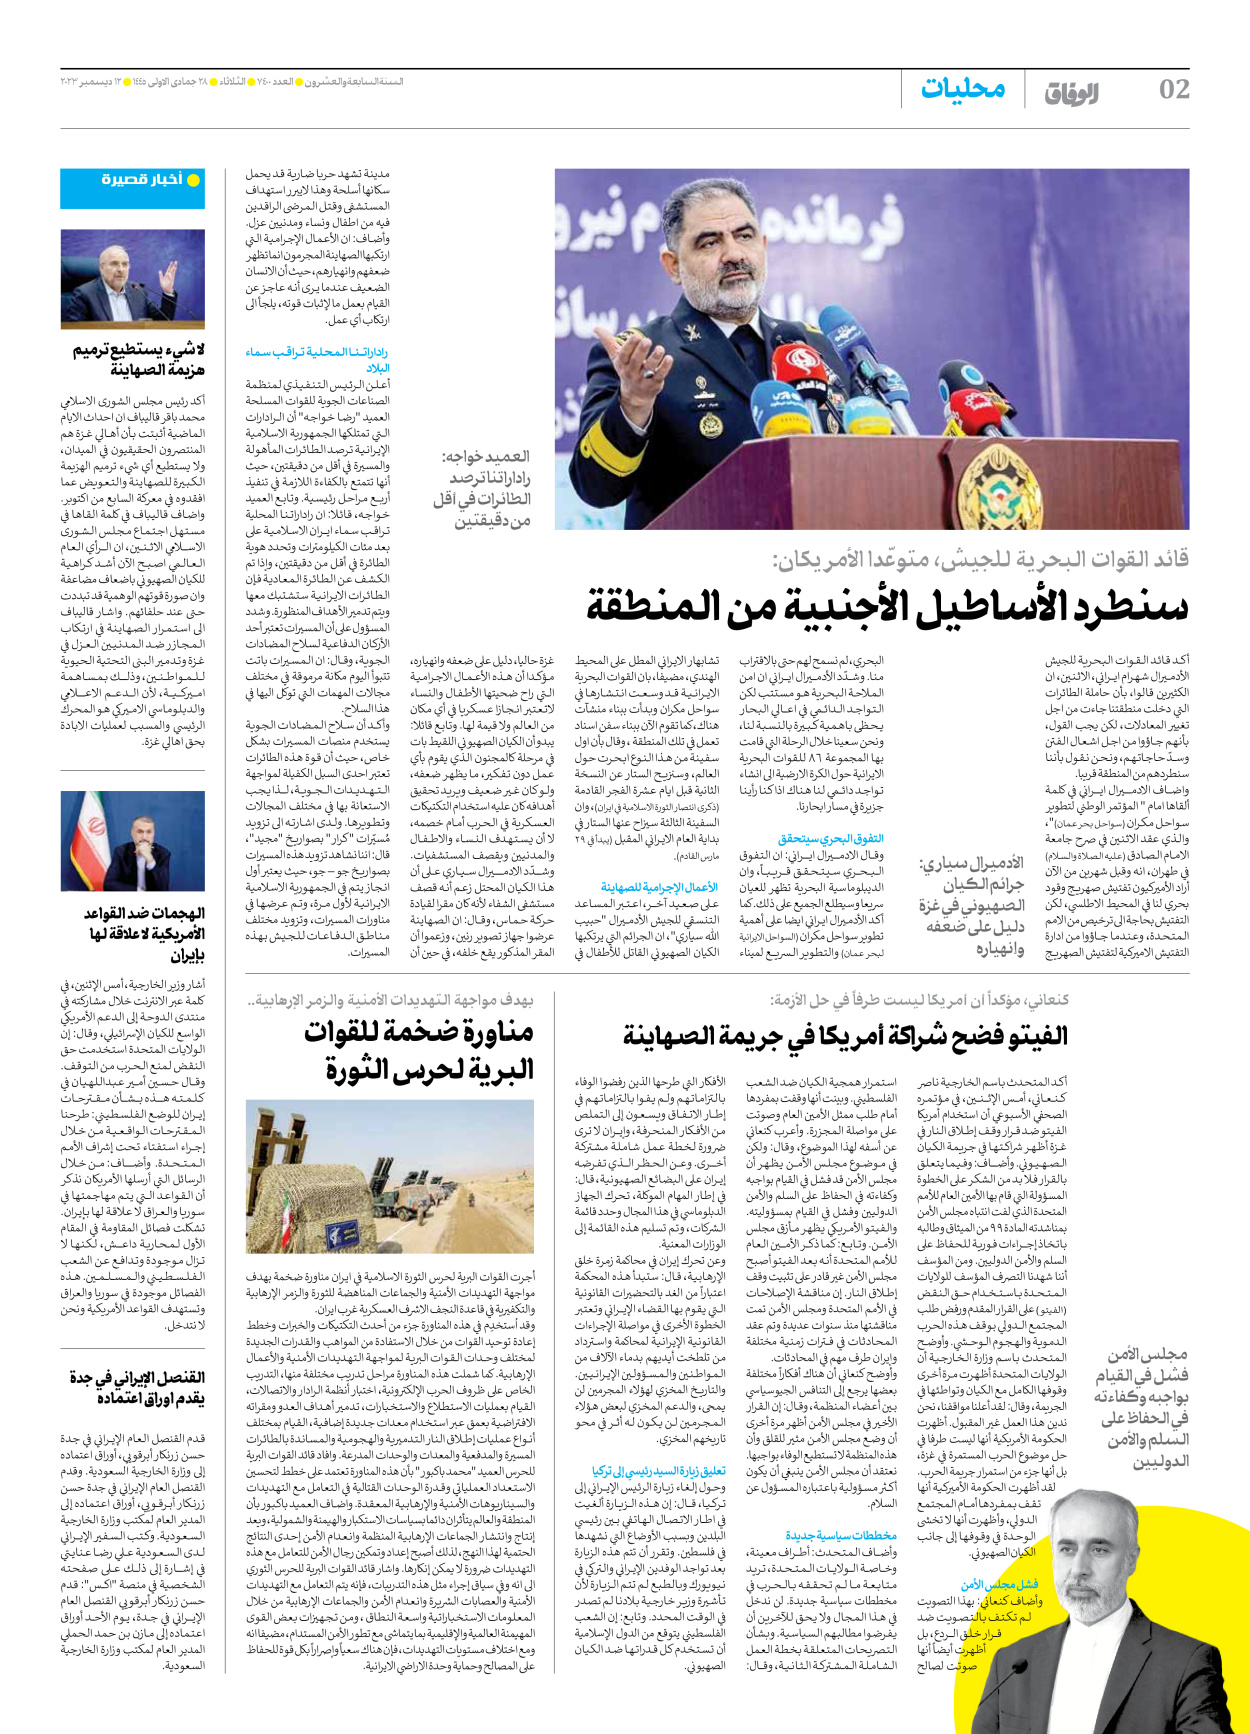 صحیفة ایران الدولیة الوفاق - العدد سبعة آلاف وأربعمائة - ١٢ ديسمبر ٢٠٢٣ - الصفحة ۲